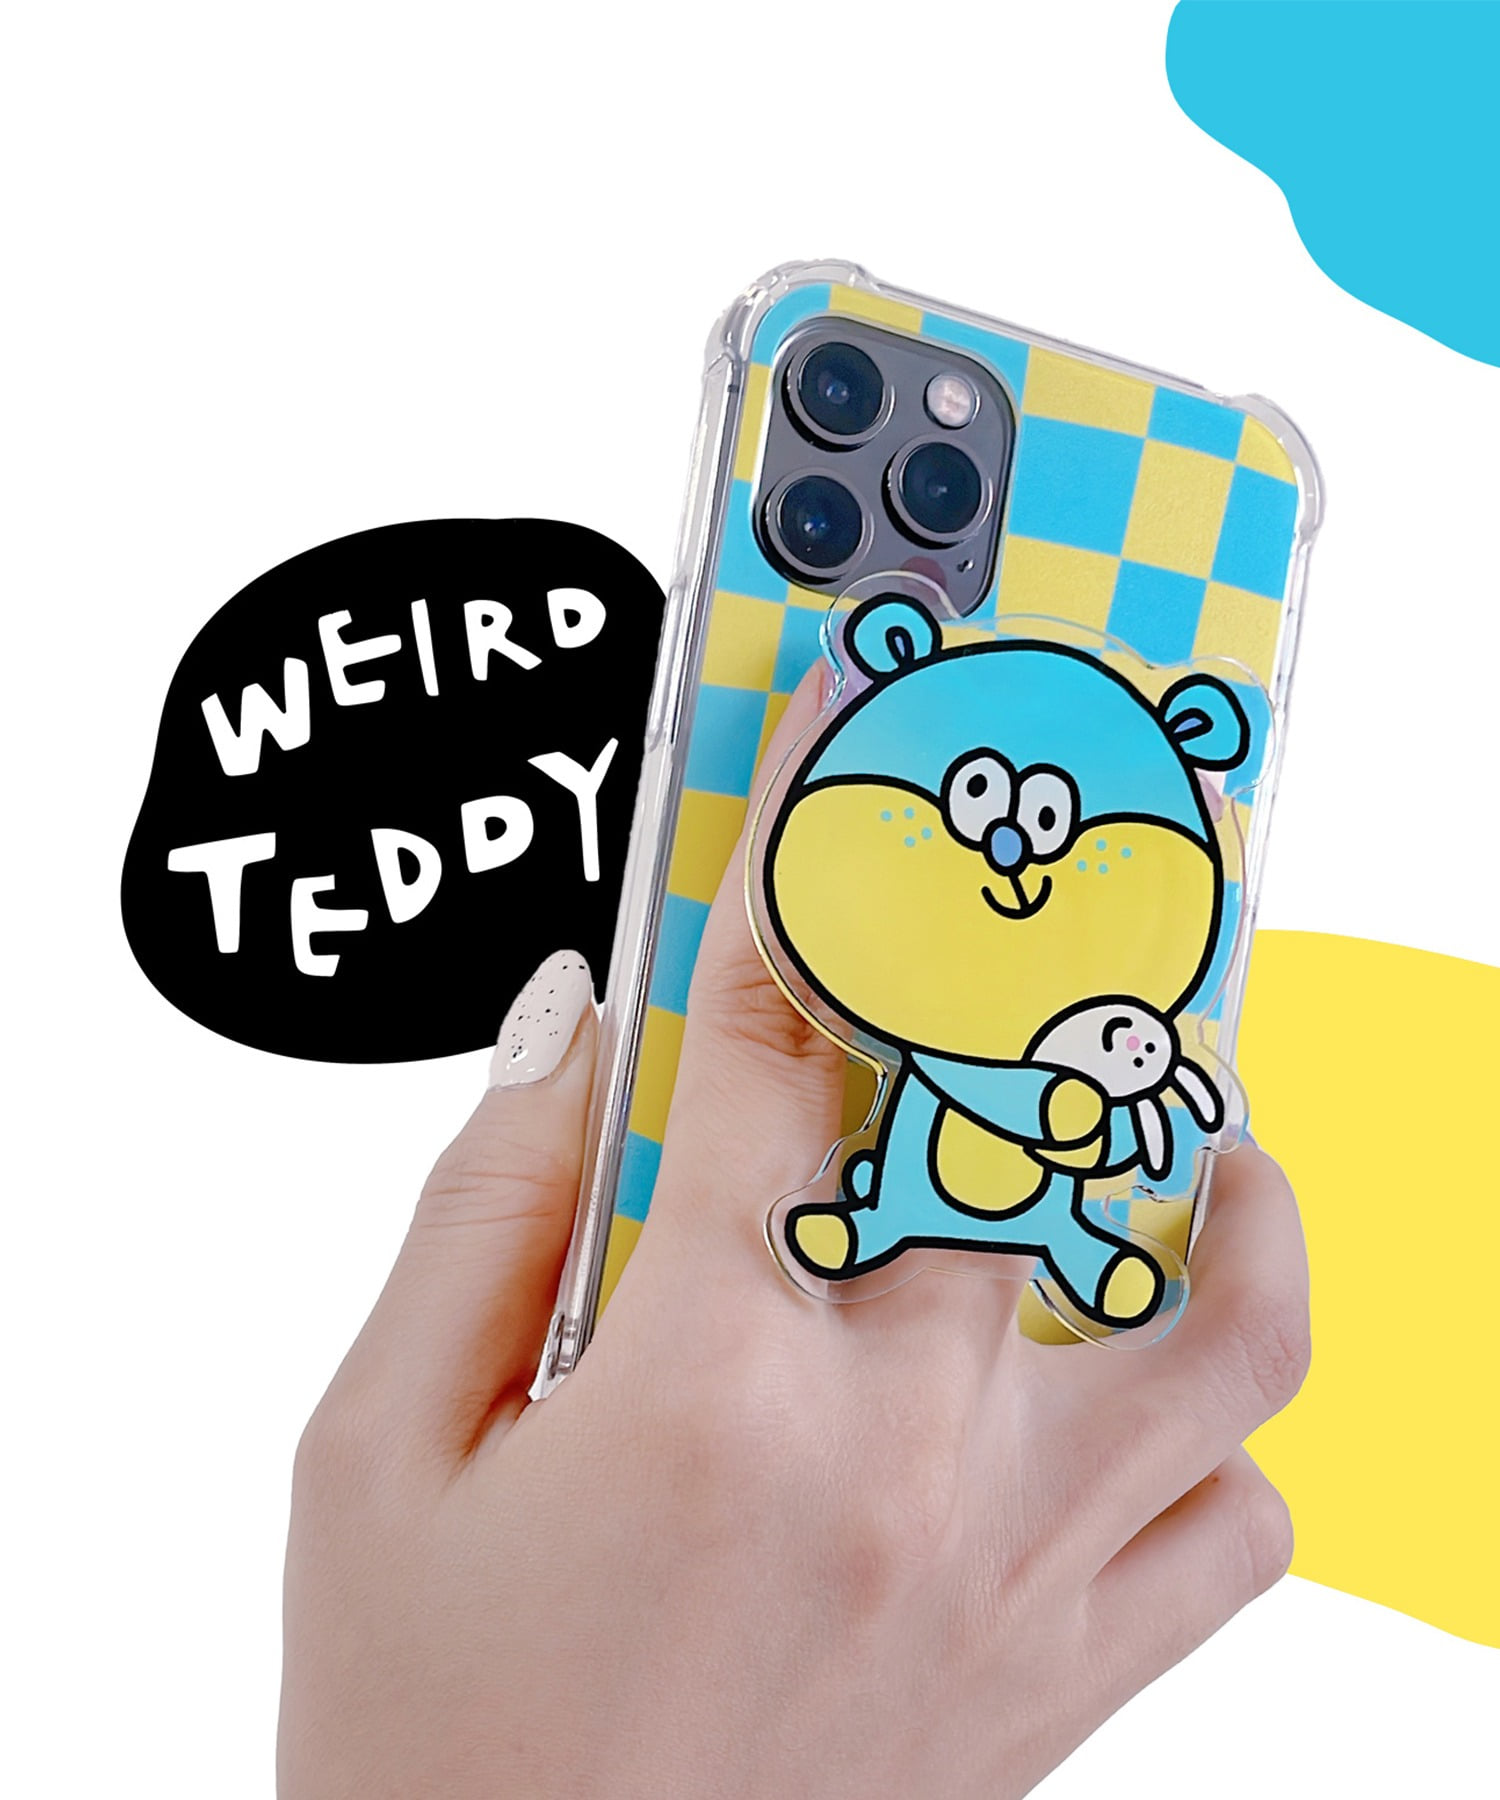 The Weird Teddy 아이폰 케이스 SET